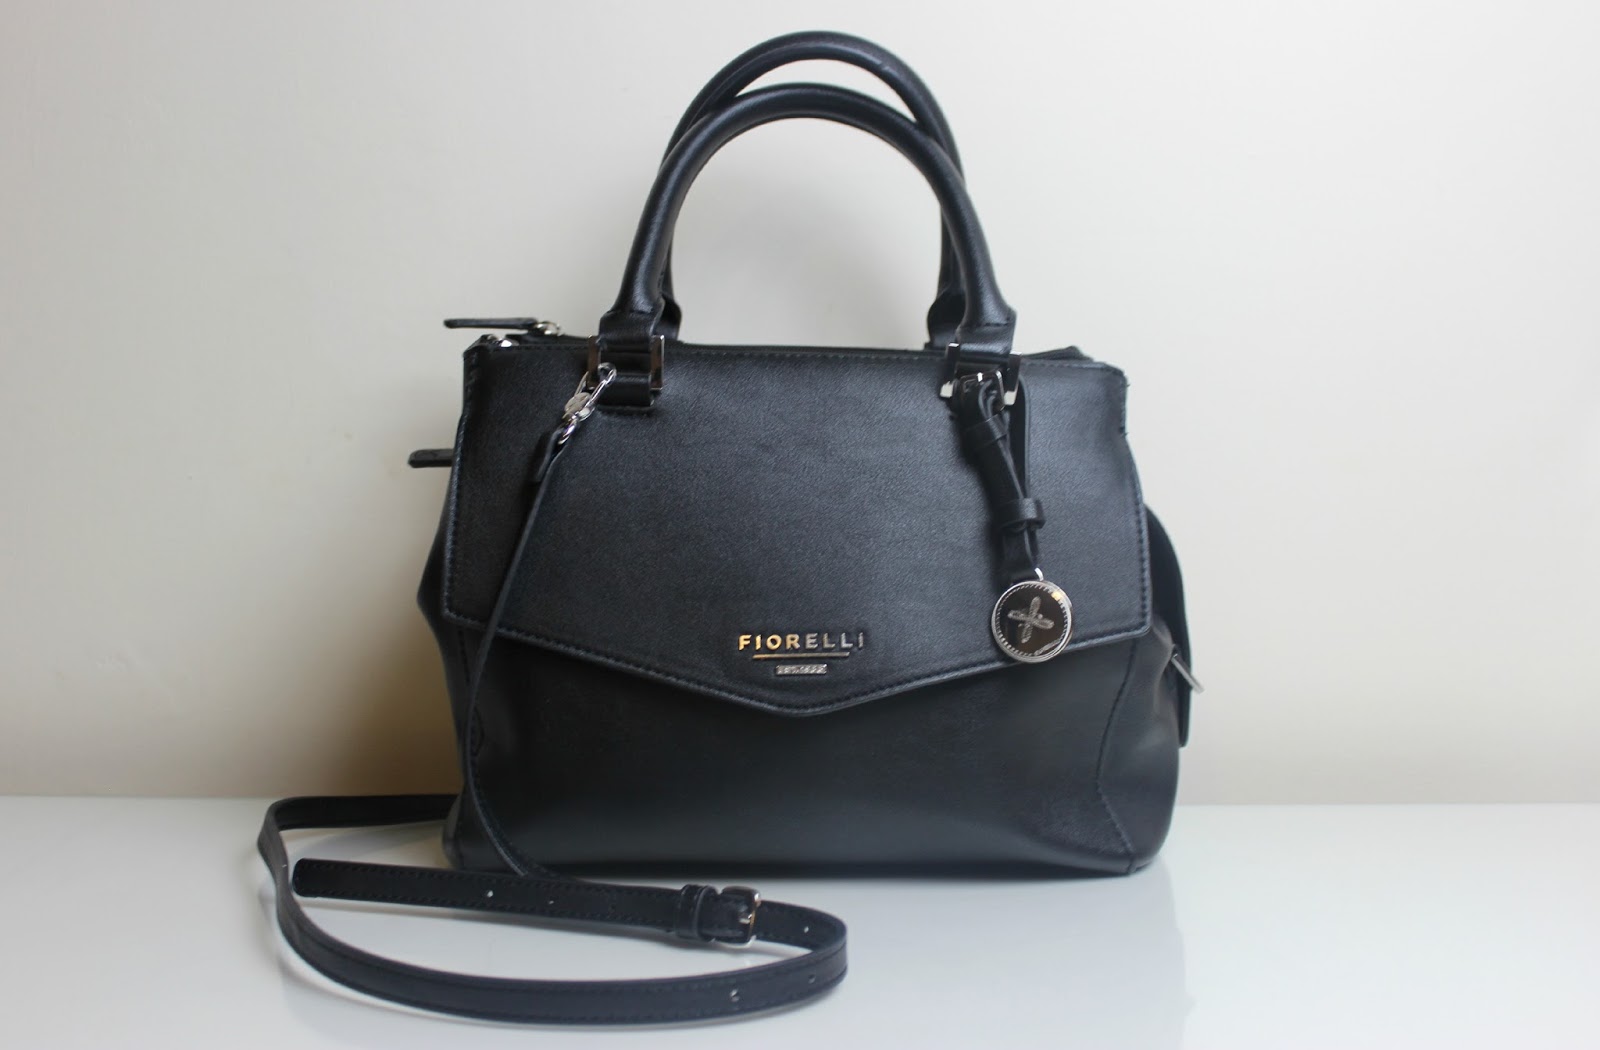 A picture of the Fiorelli Mia Grab Bag